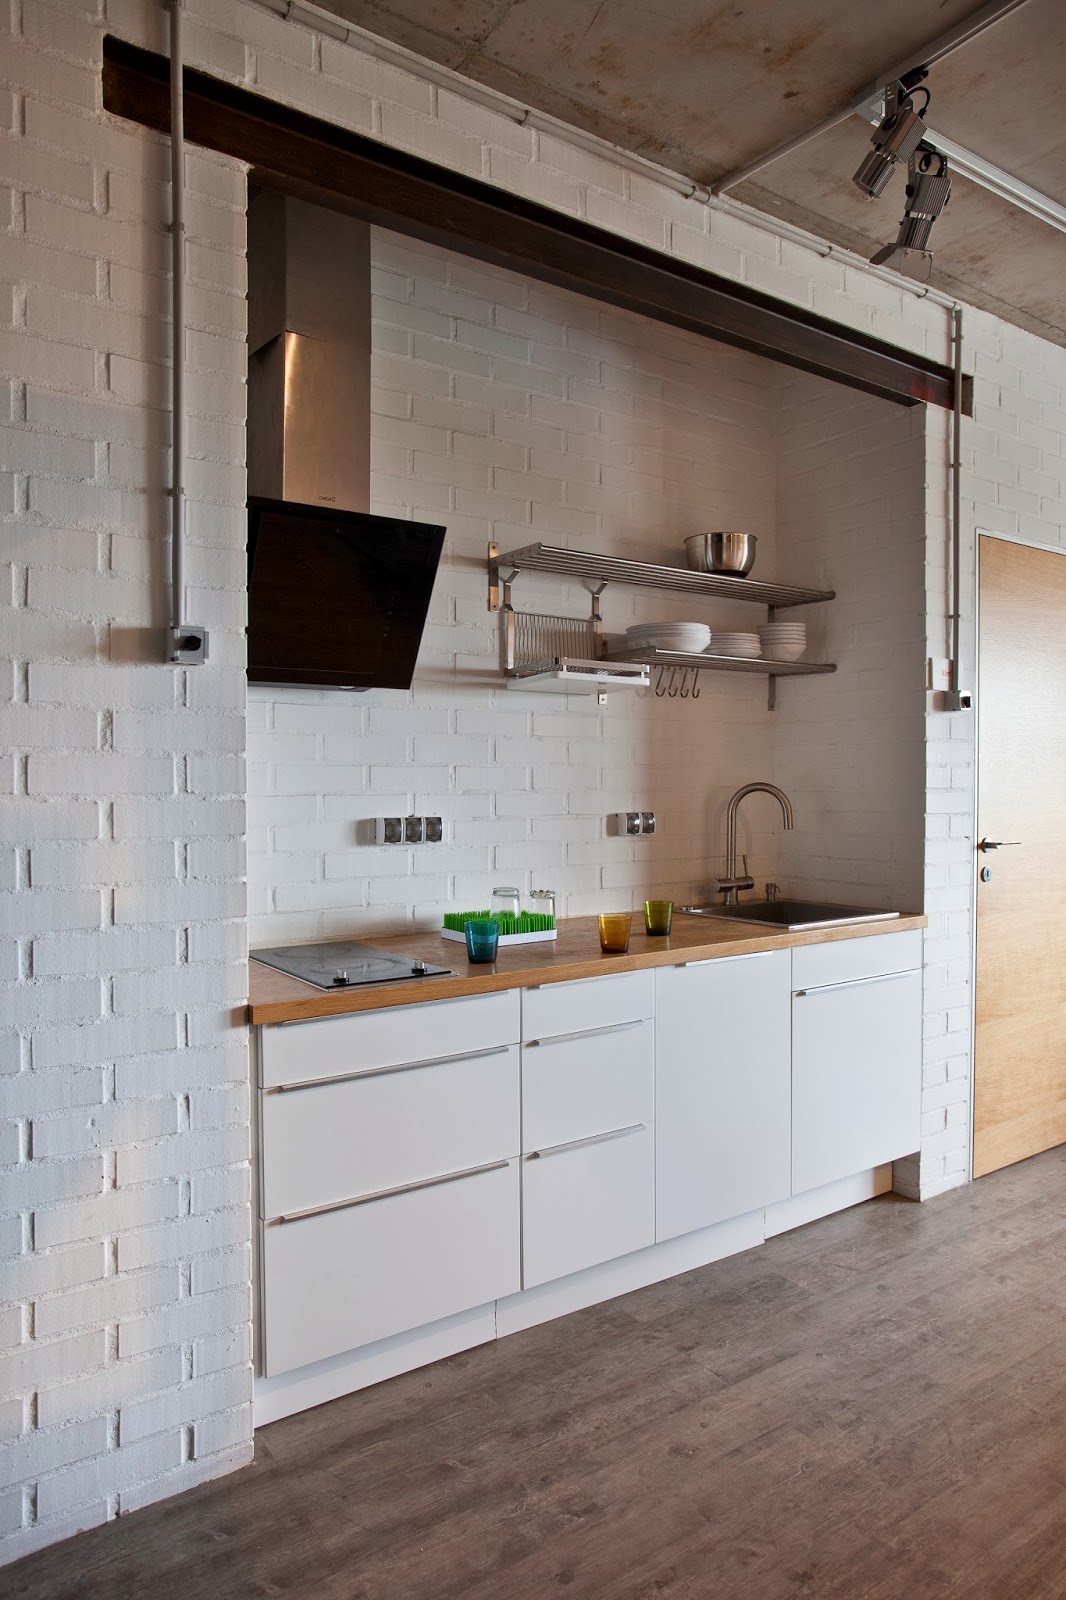 κουζίνα με λευκούς τοίχους από τούβλα στο εσωτερικό ενός δημιουργικού διαμερίσματος